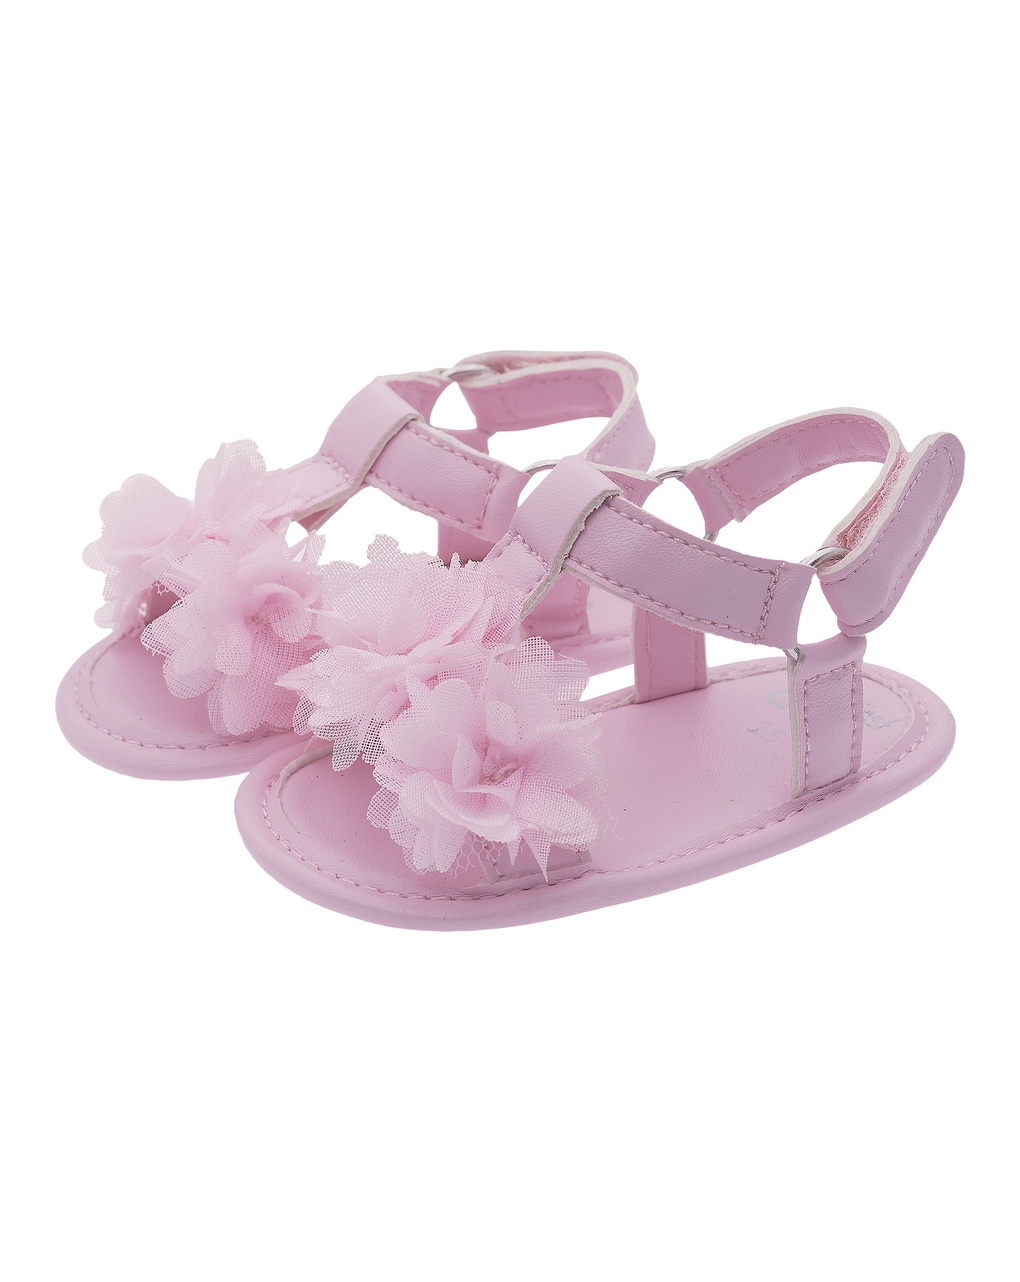 Sandalo olessia per neonate - Chicco